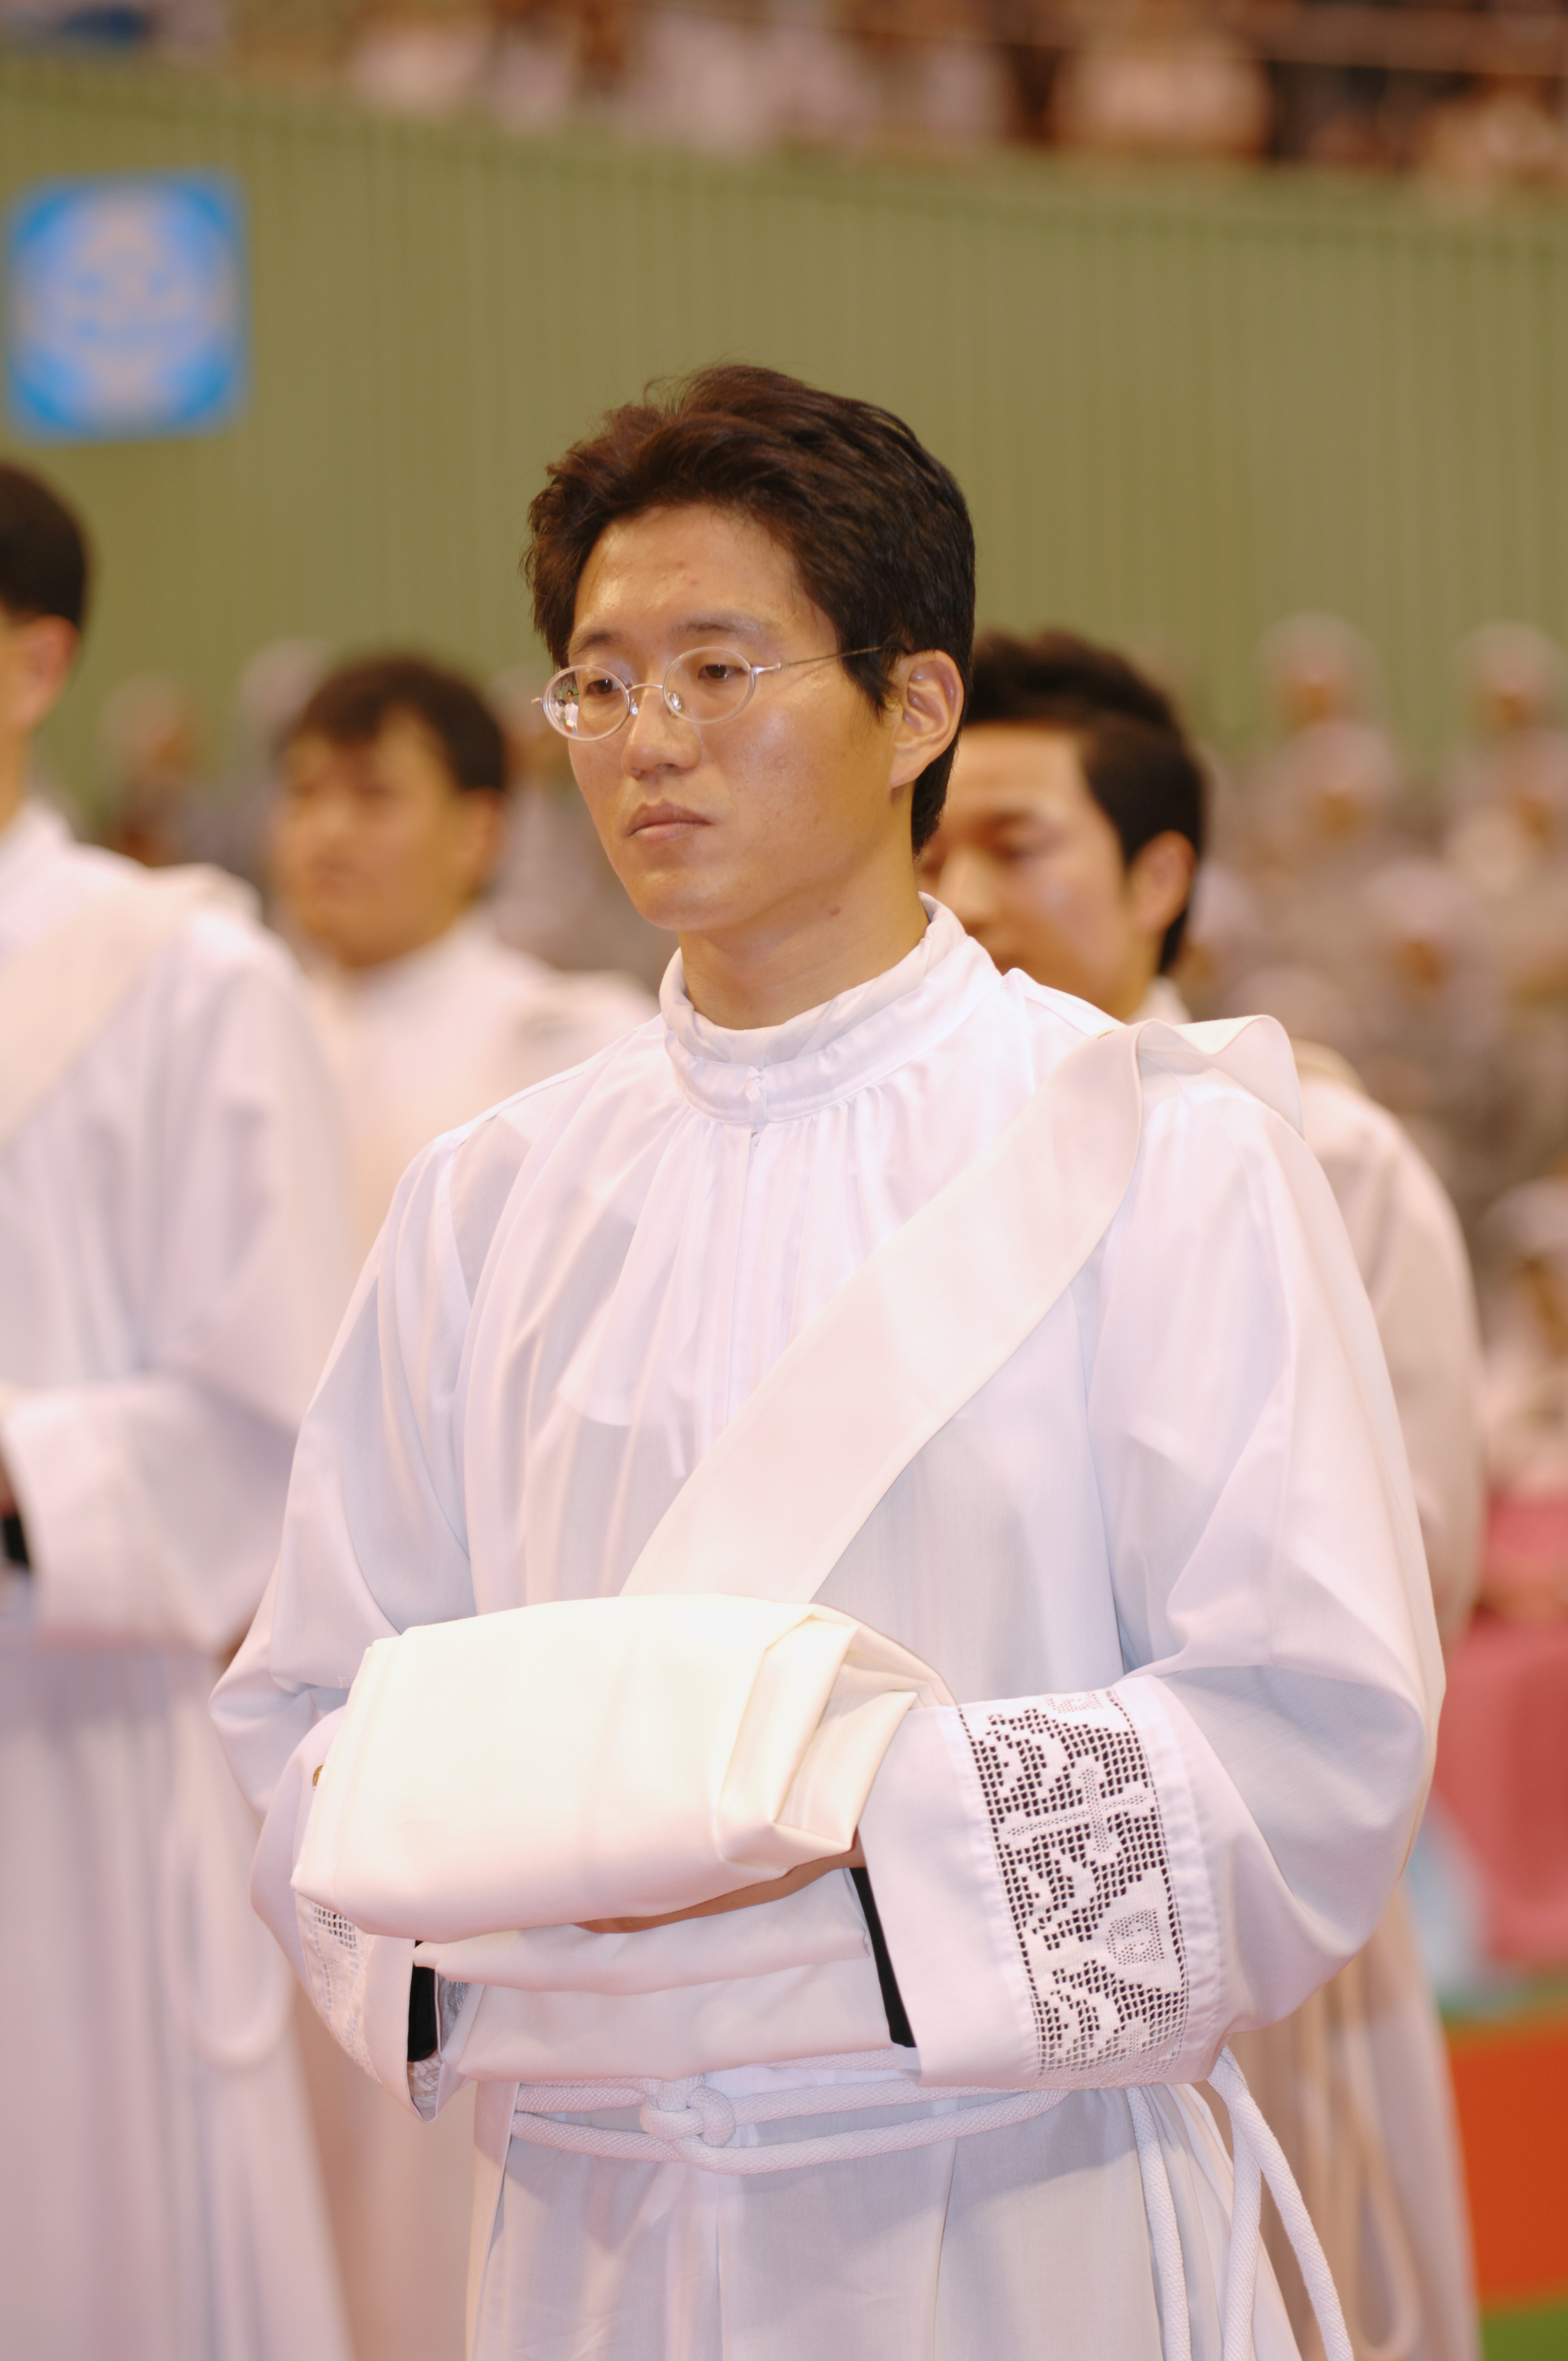 서울대교구서품식(2006)의 관련된 이미지 입니다.